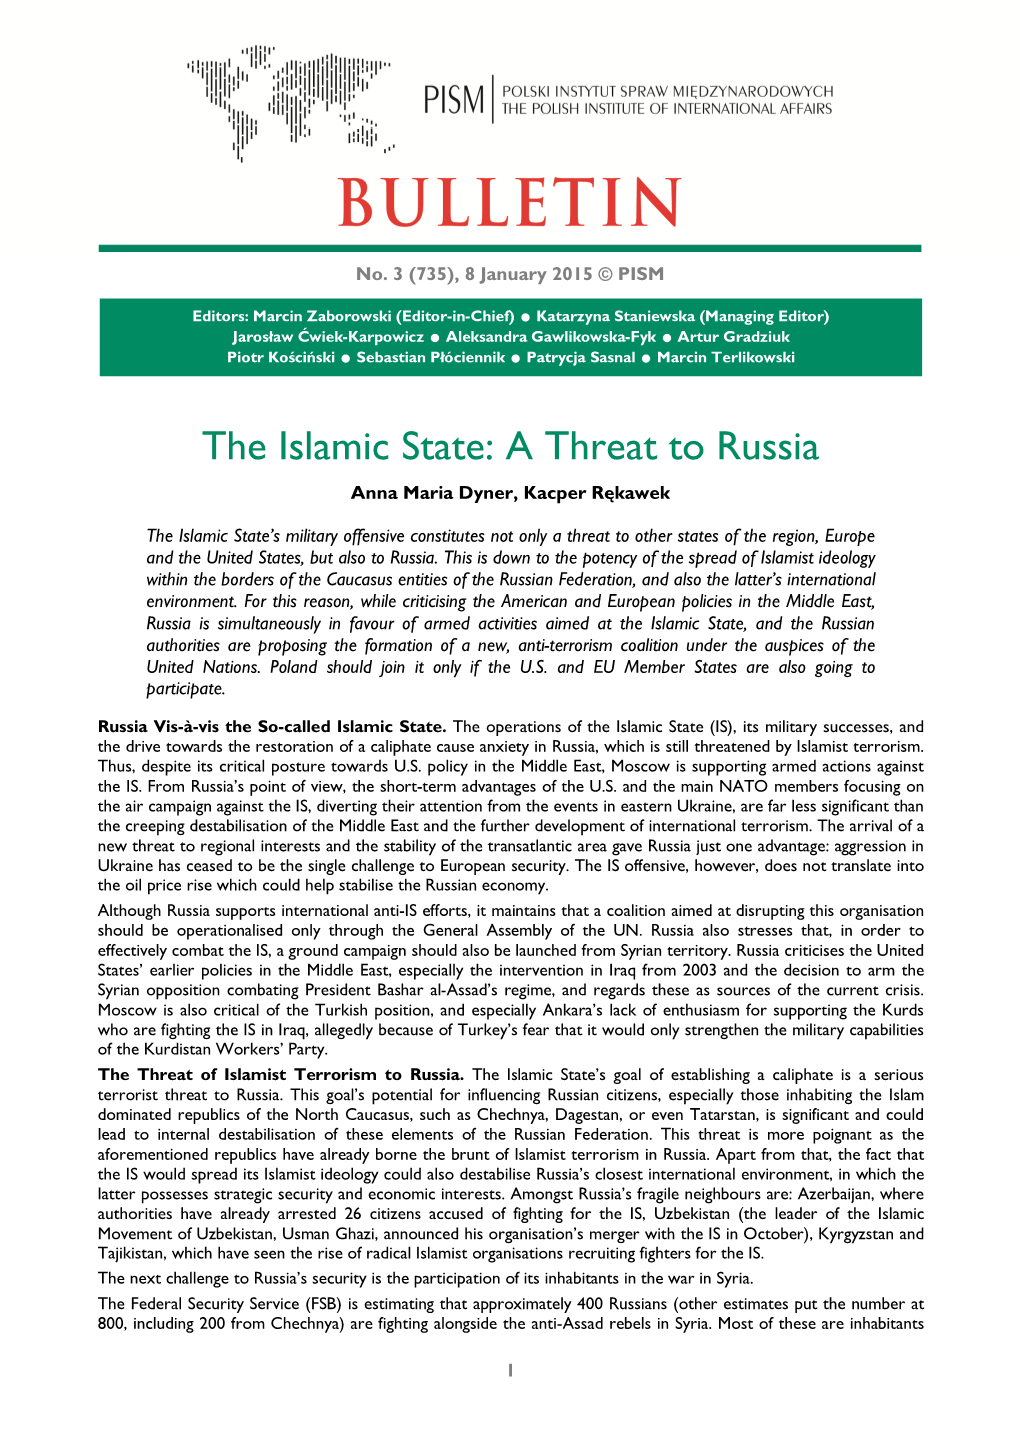 The Islamic State: a Threat to Russia Anna Maria Dyner, Kacper Rękawek